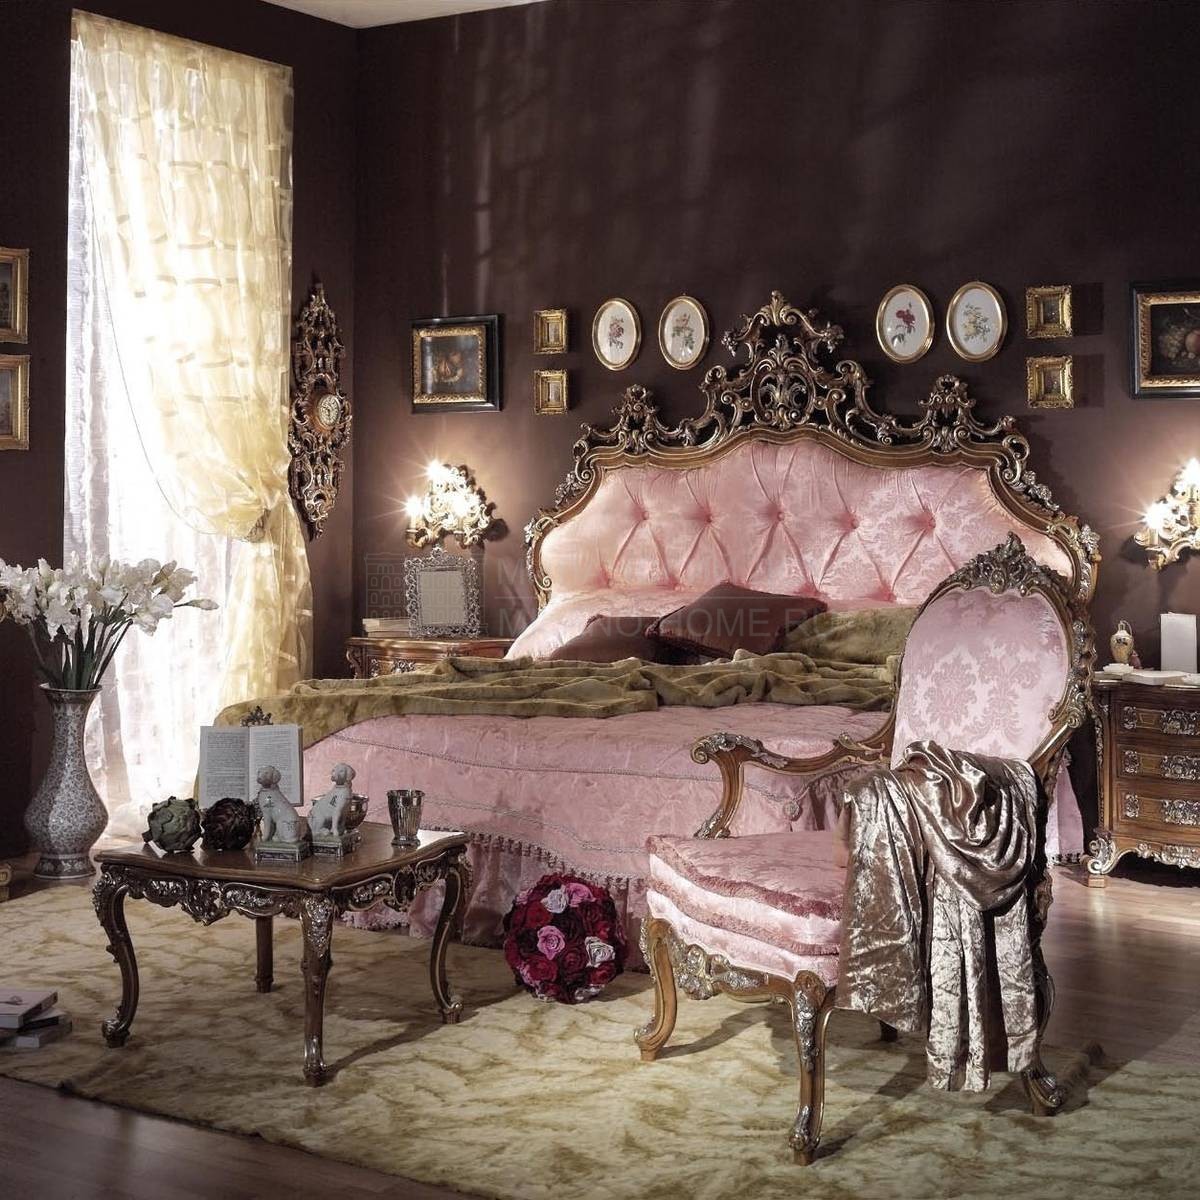 Двуспальная кровать Marlisa Prestige bed из Италии фабрики ASNAGHI INTERIORS